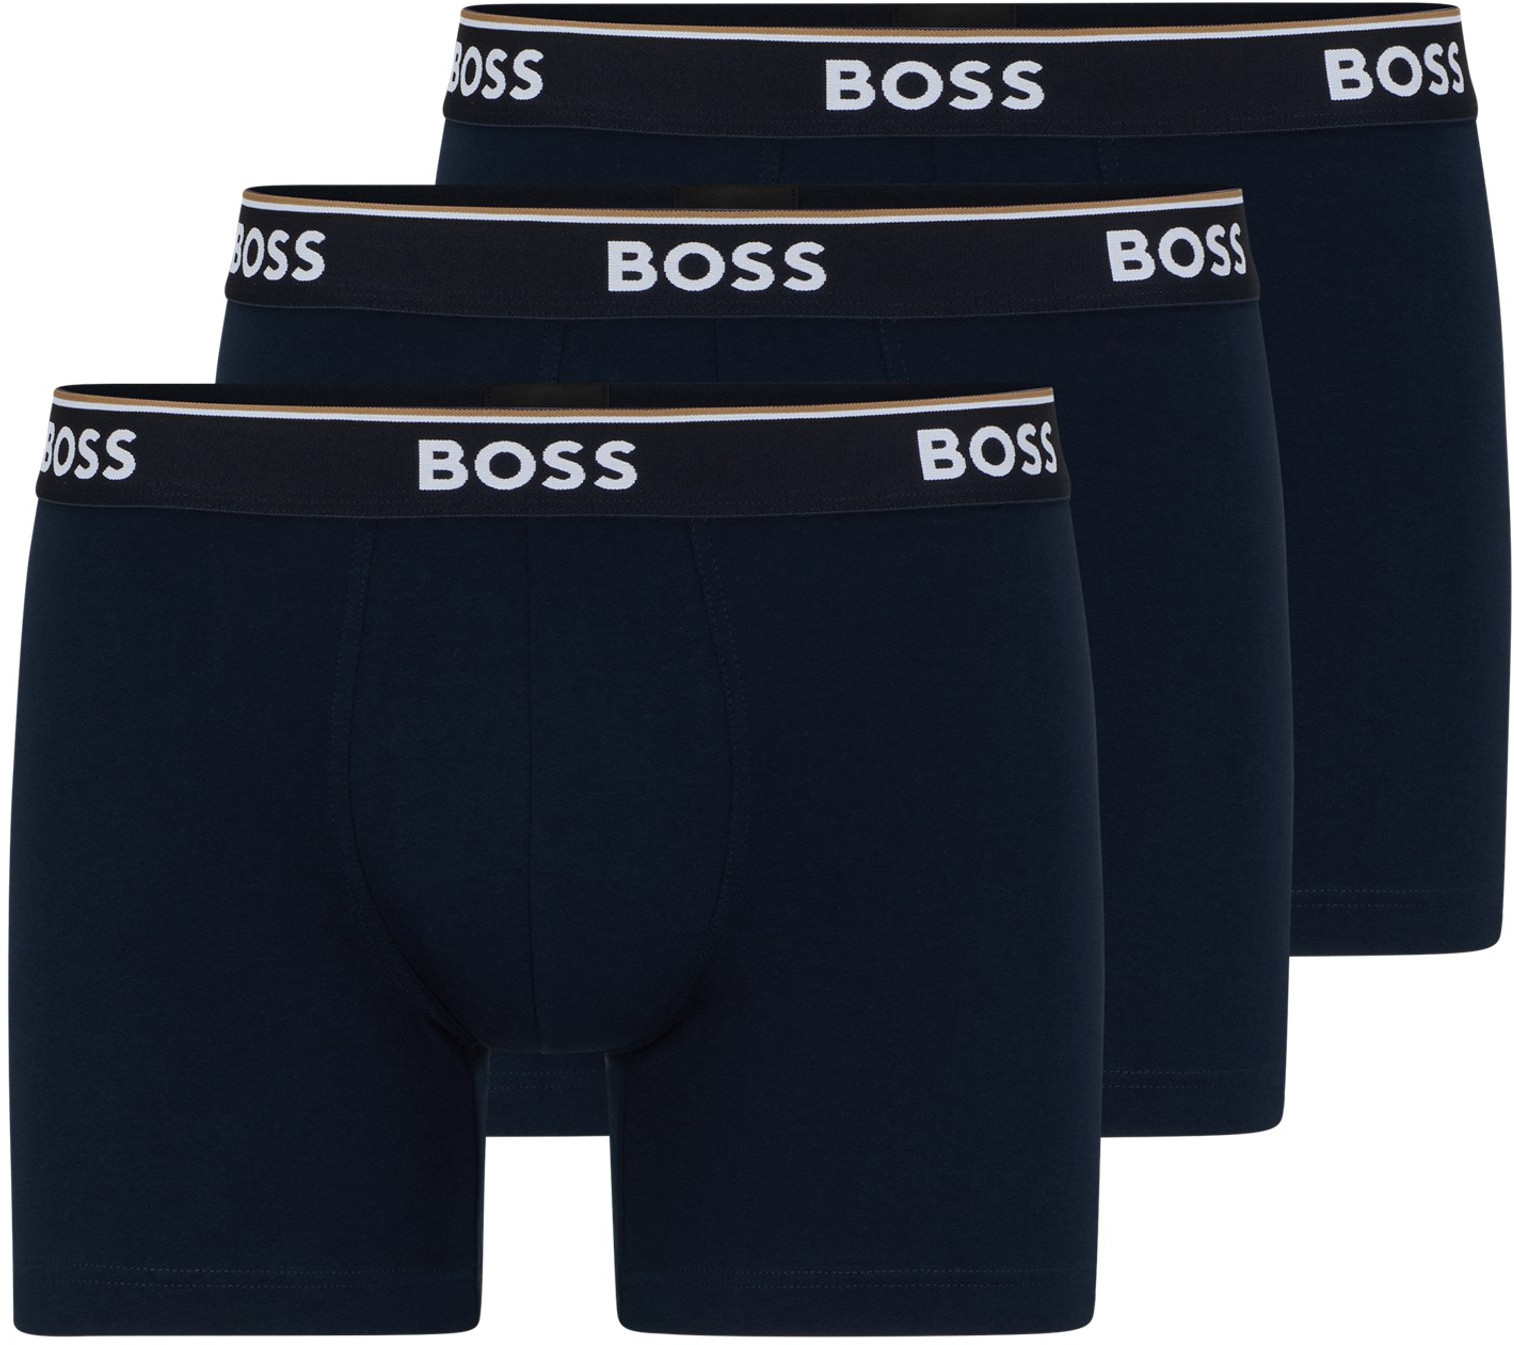 Hugo Boss 3 PACK - pánske boxerky BOSS 50475282-480 M